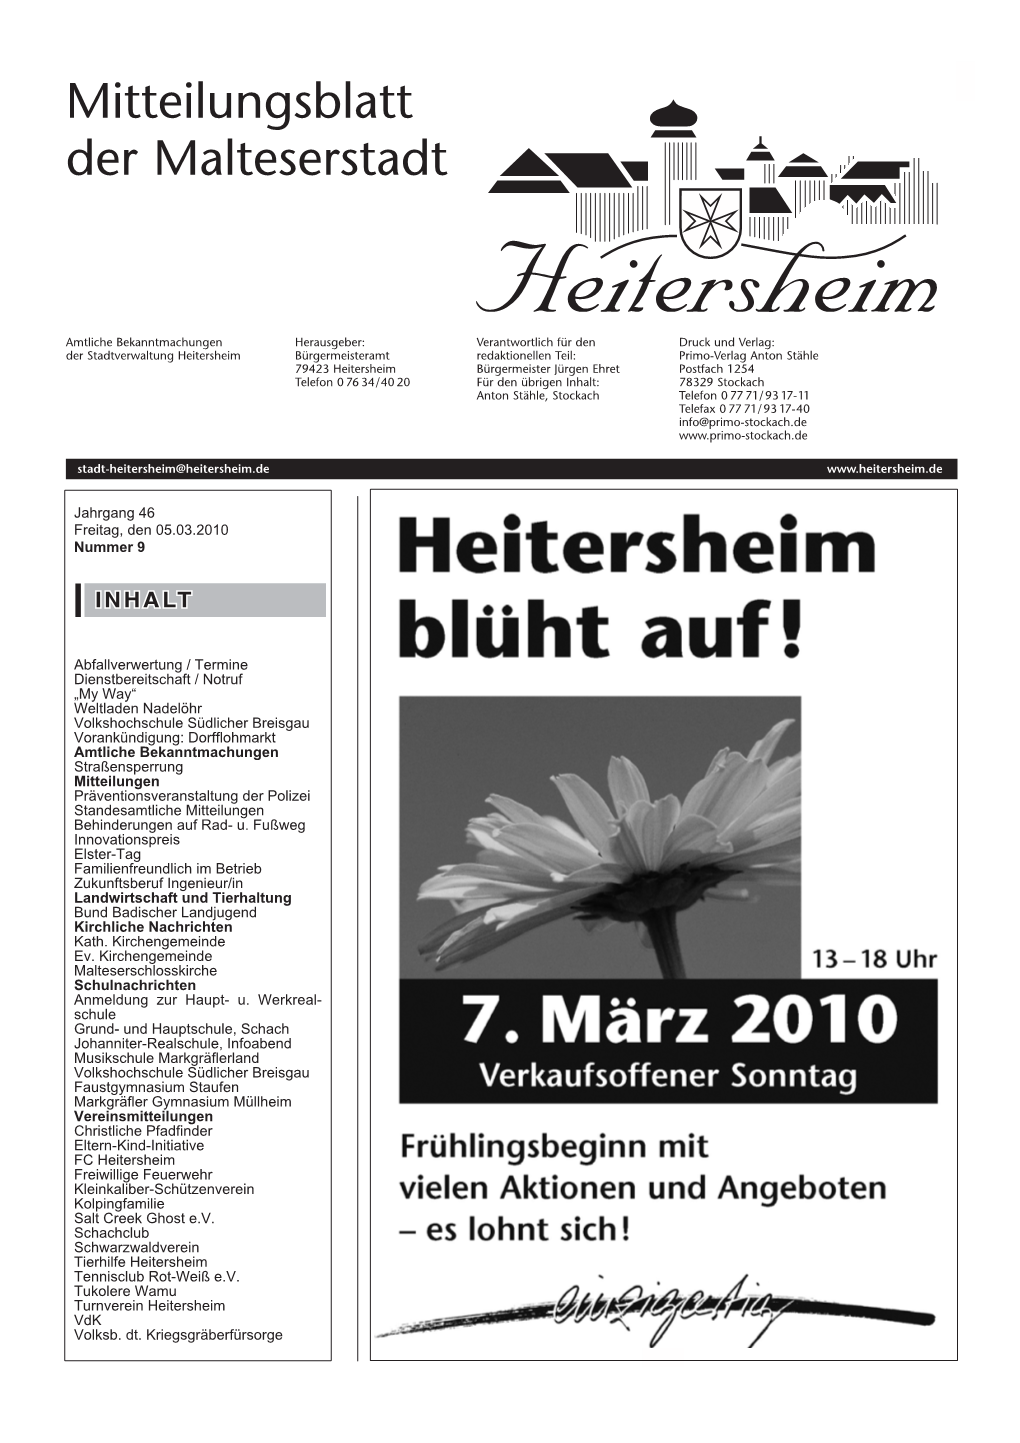 Mitteilungsblatt Nr. 9 Vom 05.03.2010